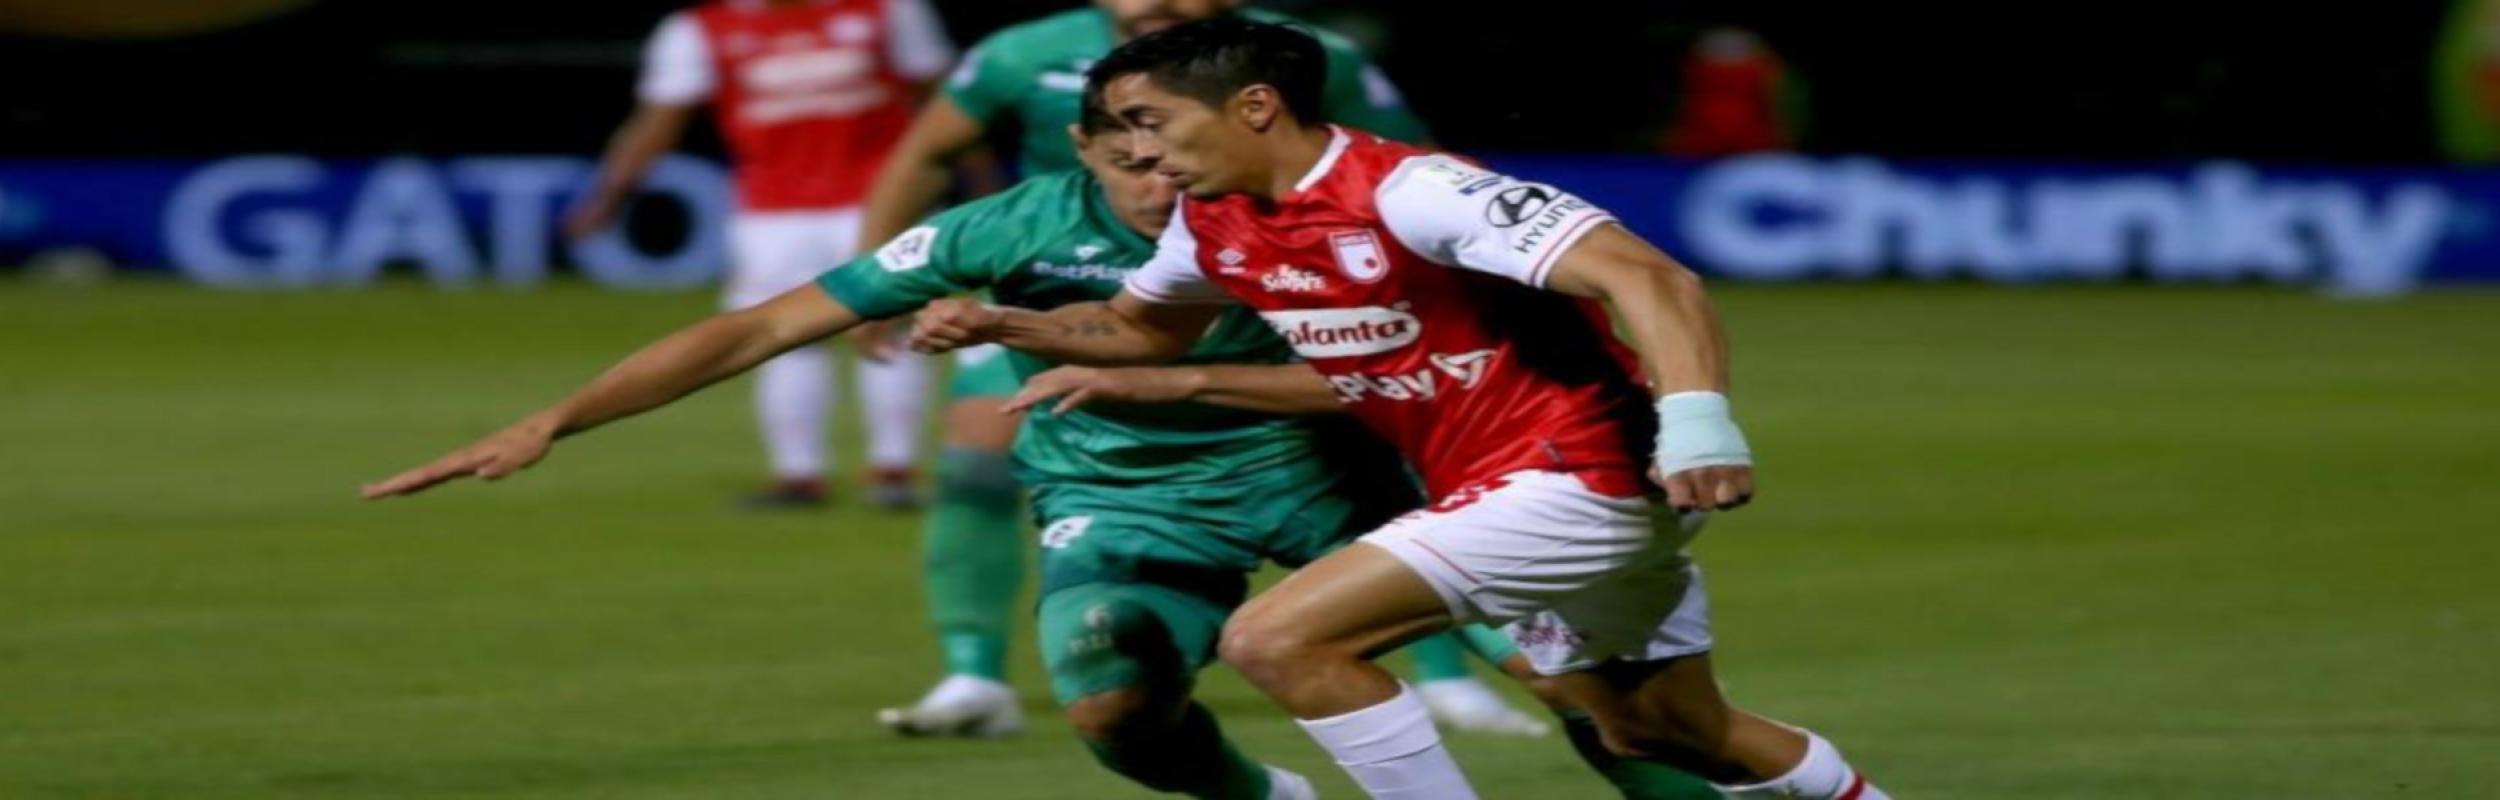 Λα Εκιδάδ - Σάντα Φε, La Equidad vs. Independiente Santa Fe 